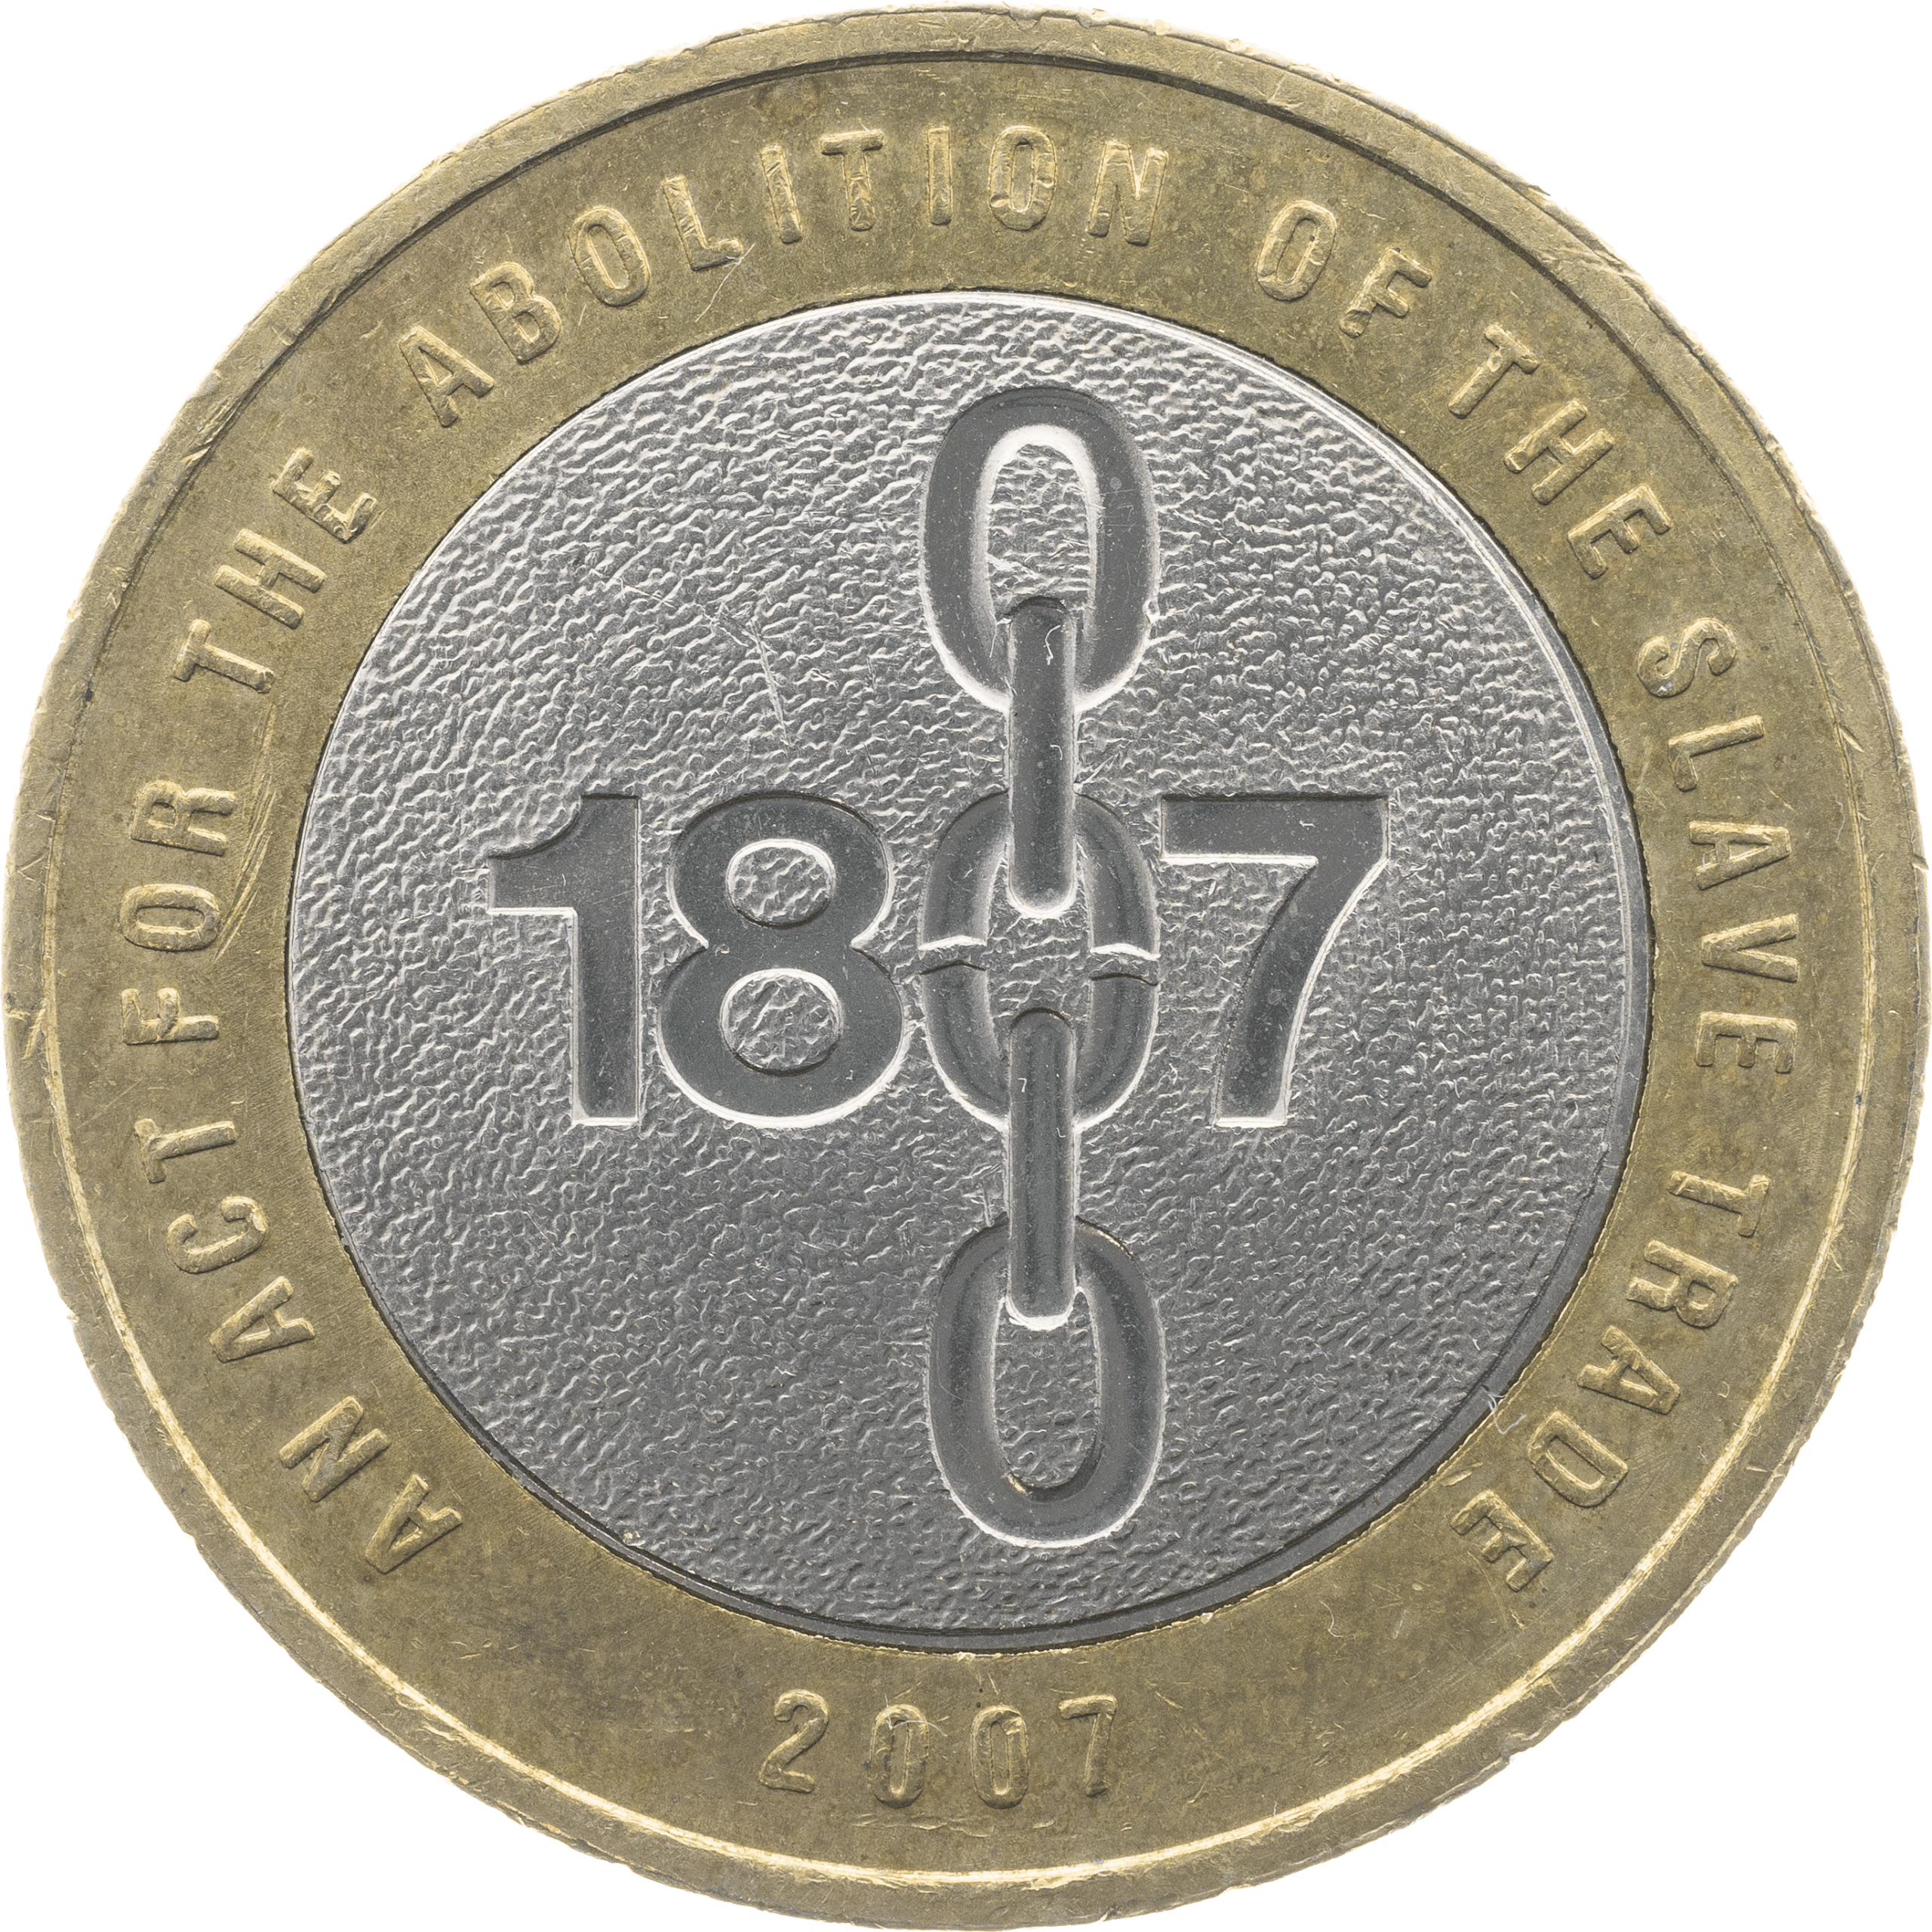 Slave Trade £2 Coin Reverse Design